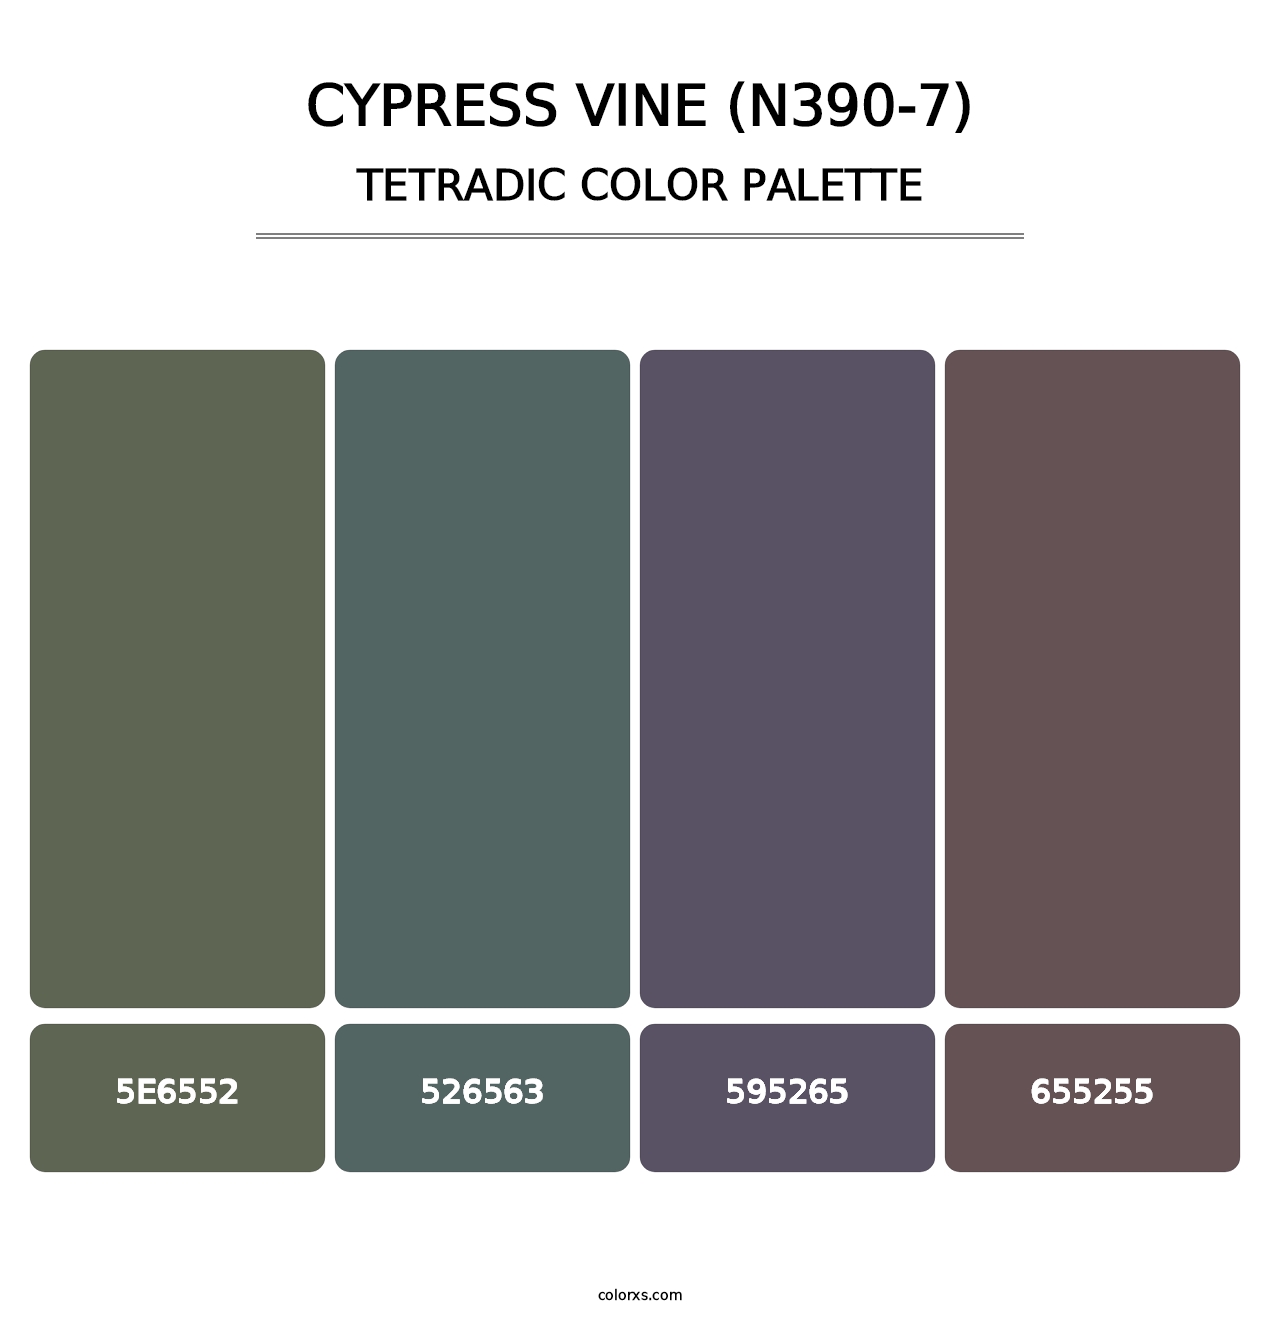 Cypress Vine (N390-7) - Tetradic Color Palette